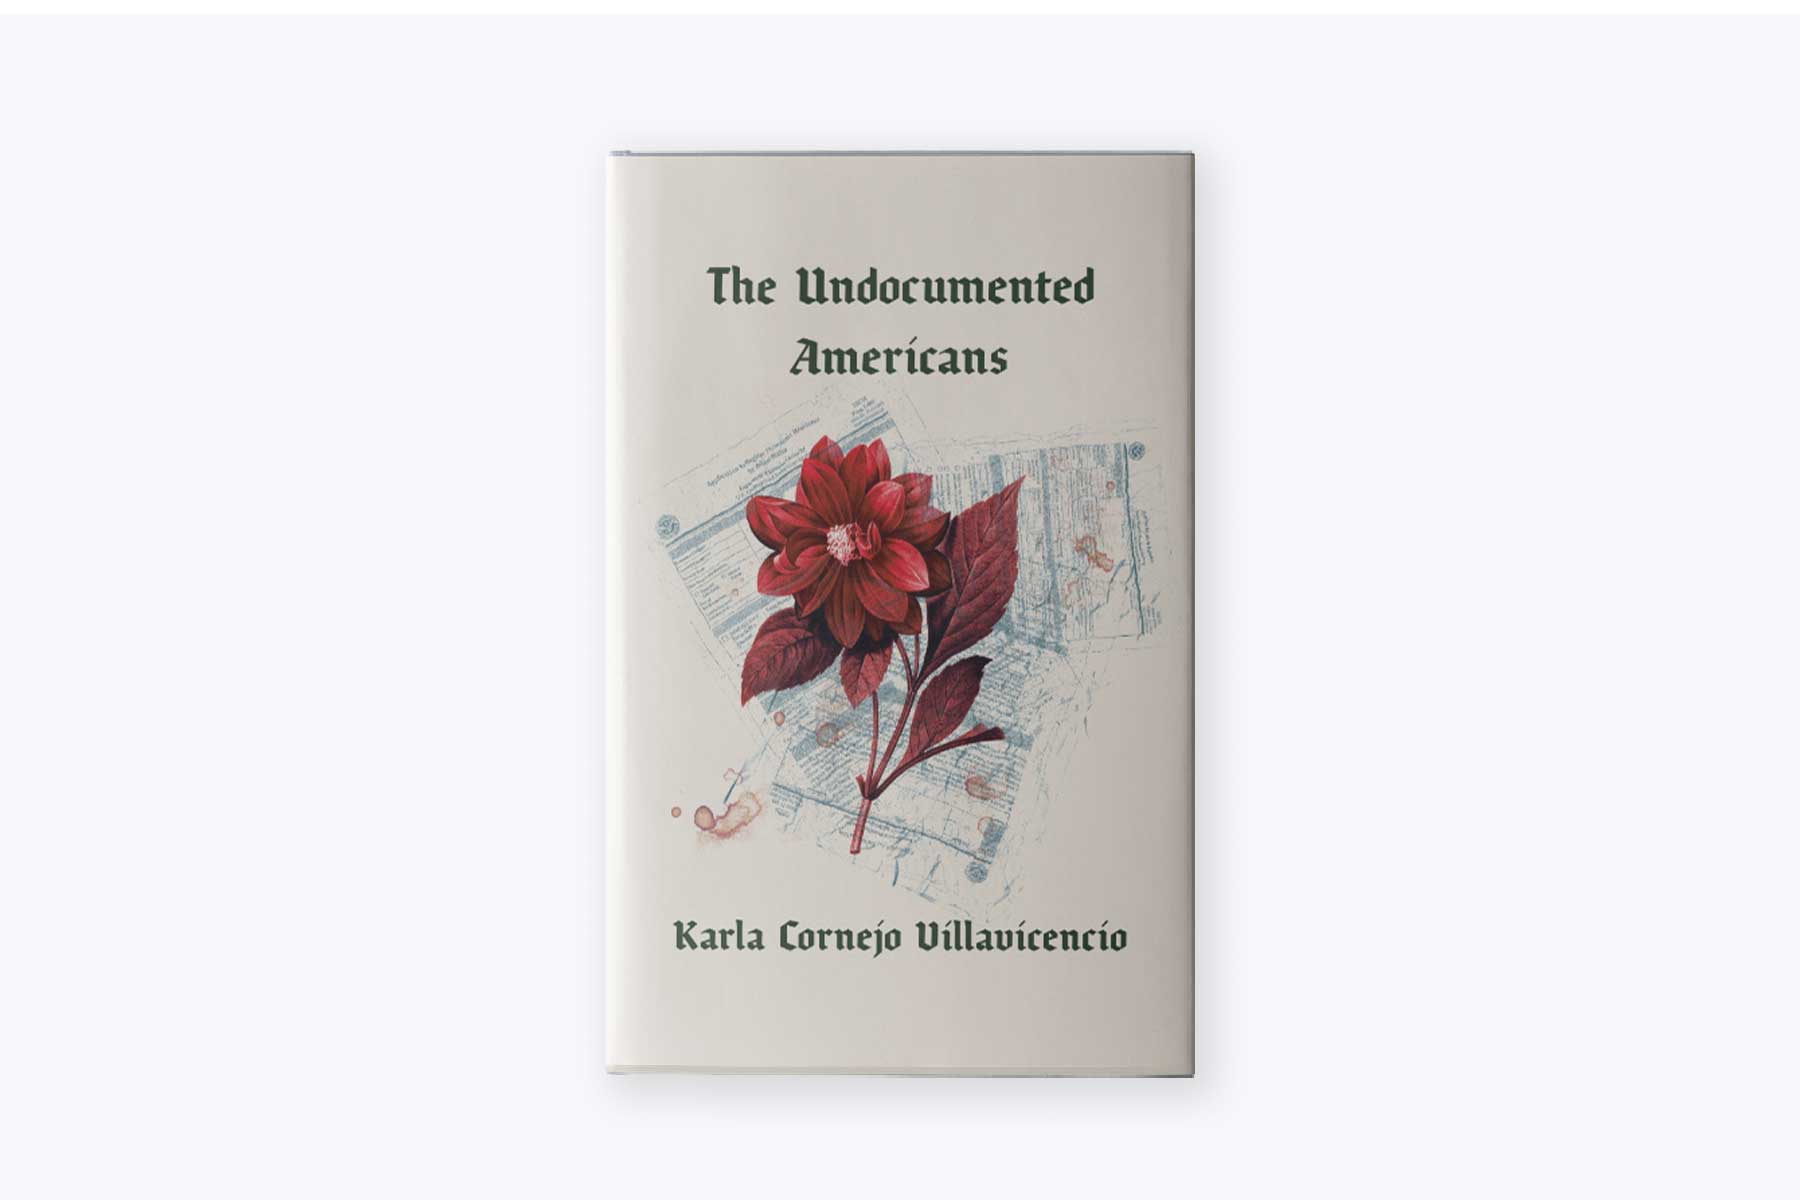 The cover of Karla Cornejo Villavicencio's book, The Undocumented Americans.